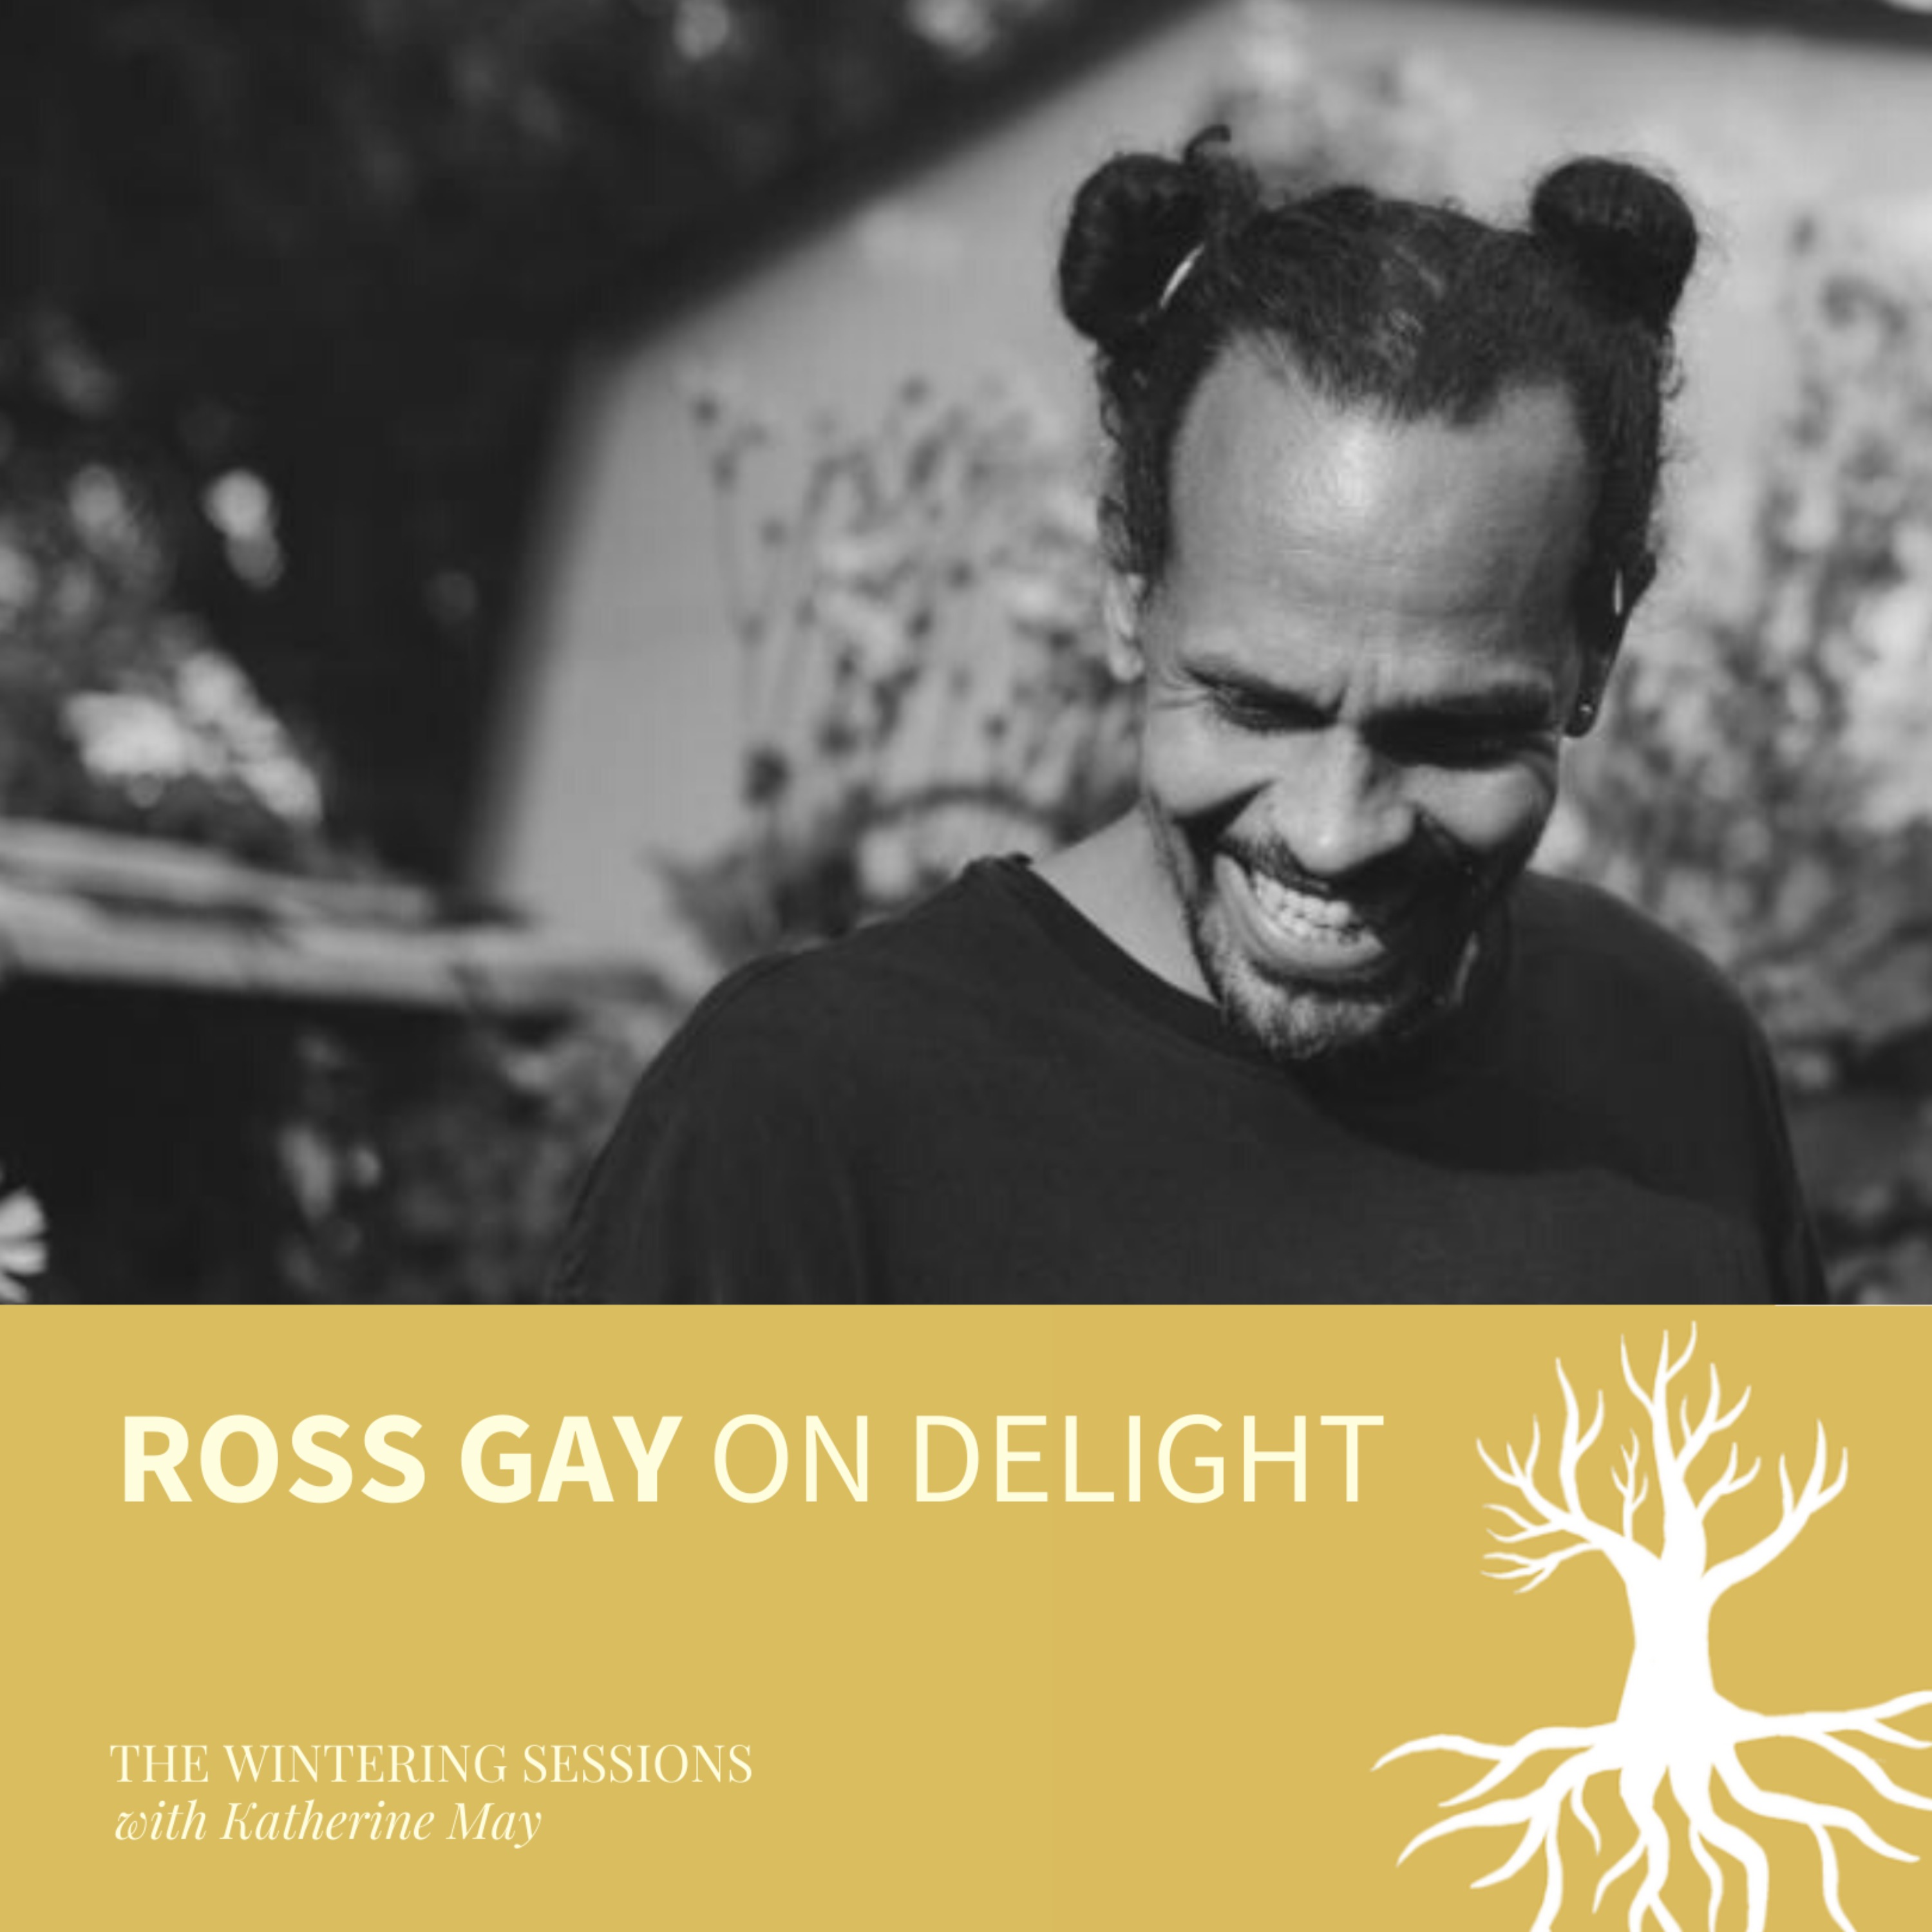 Ross Gay on delight